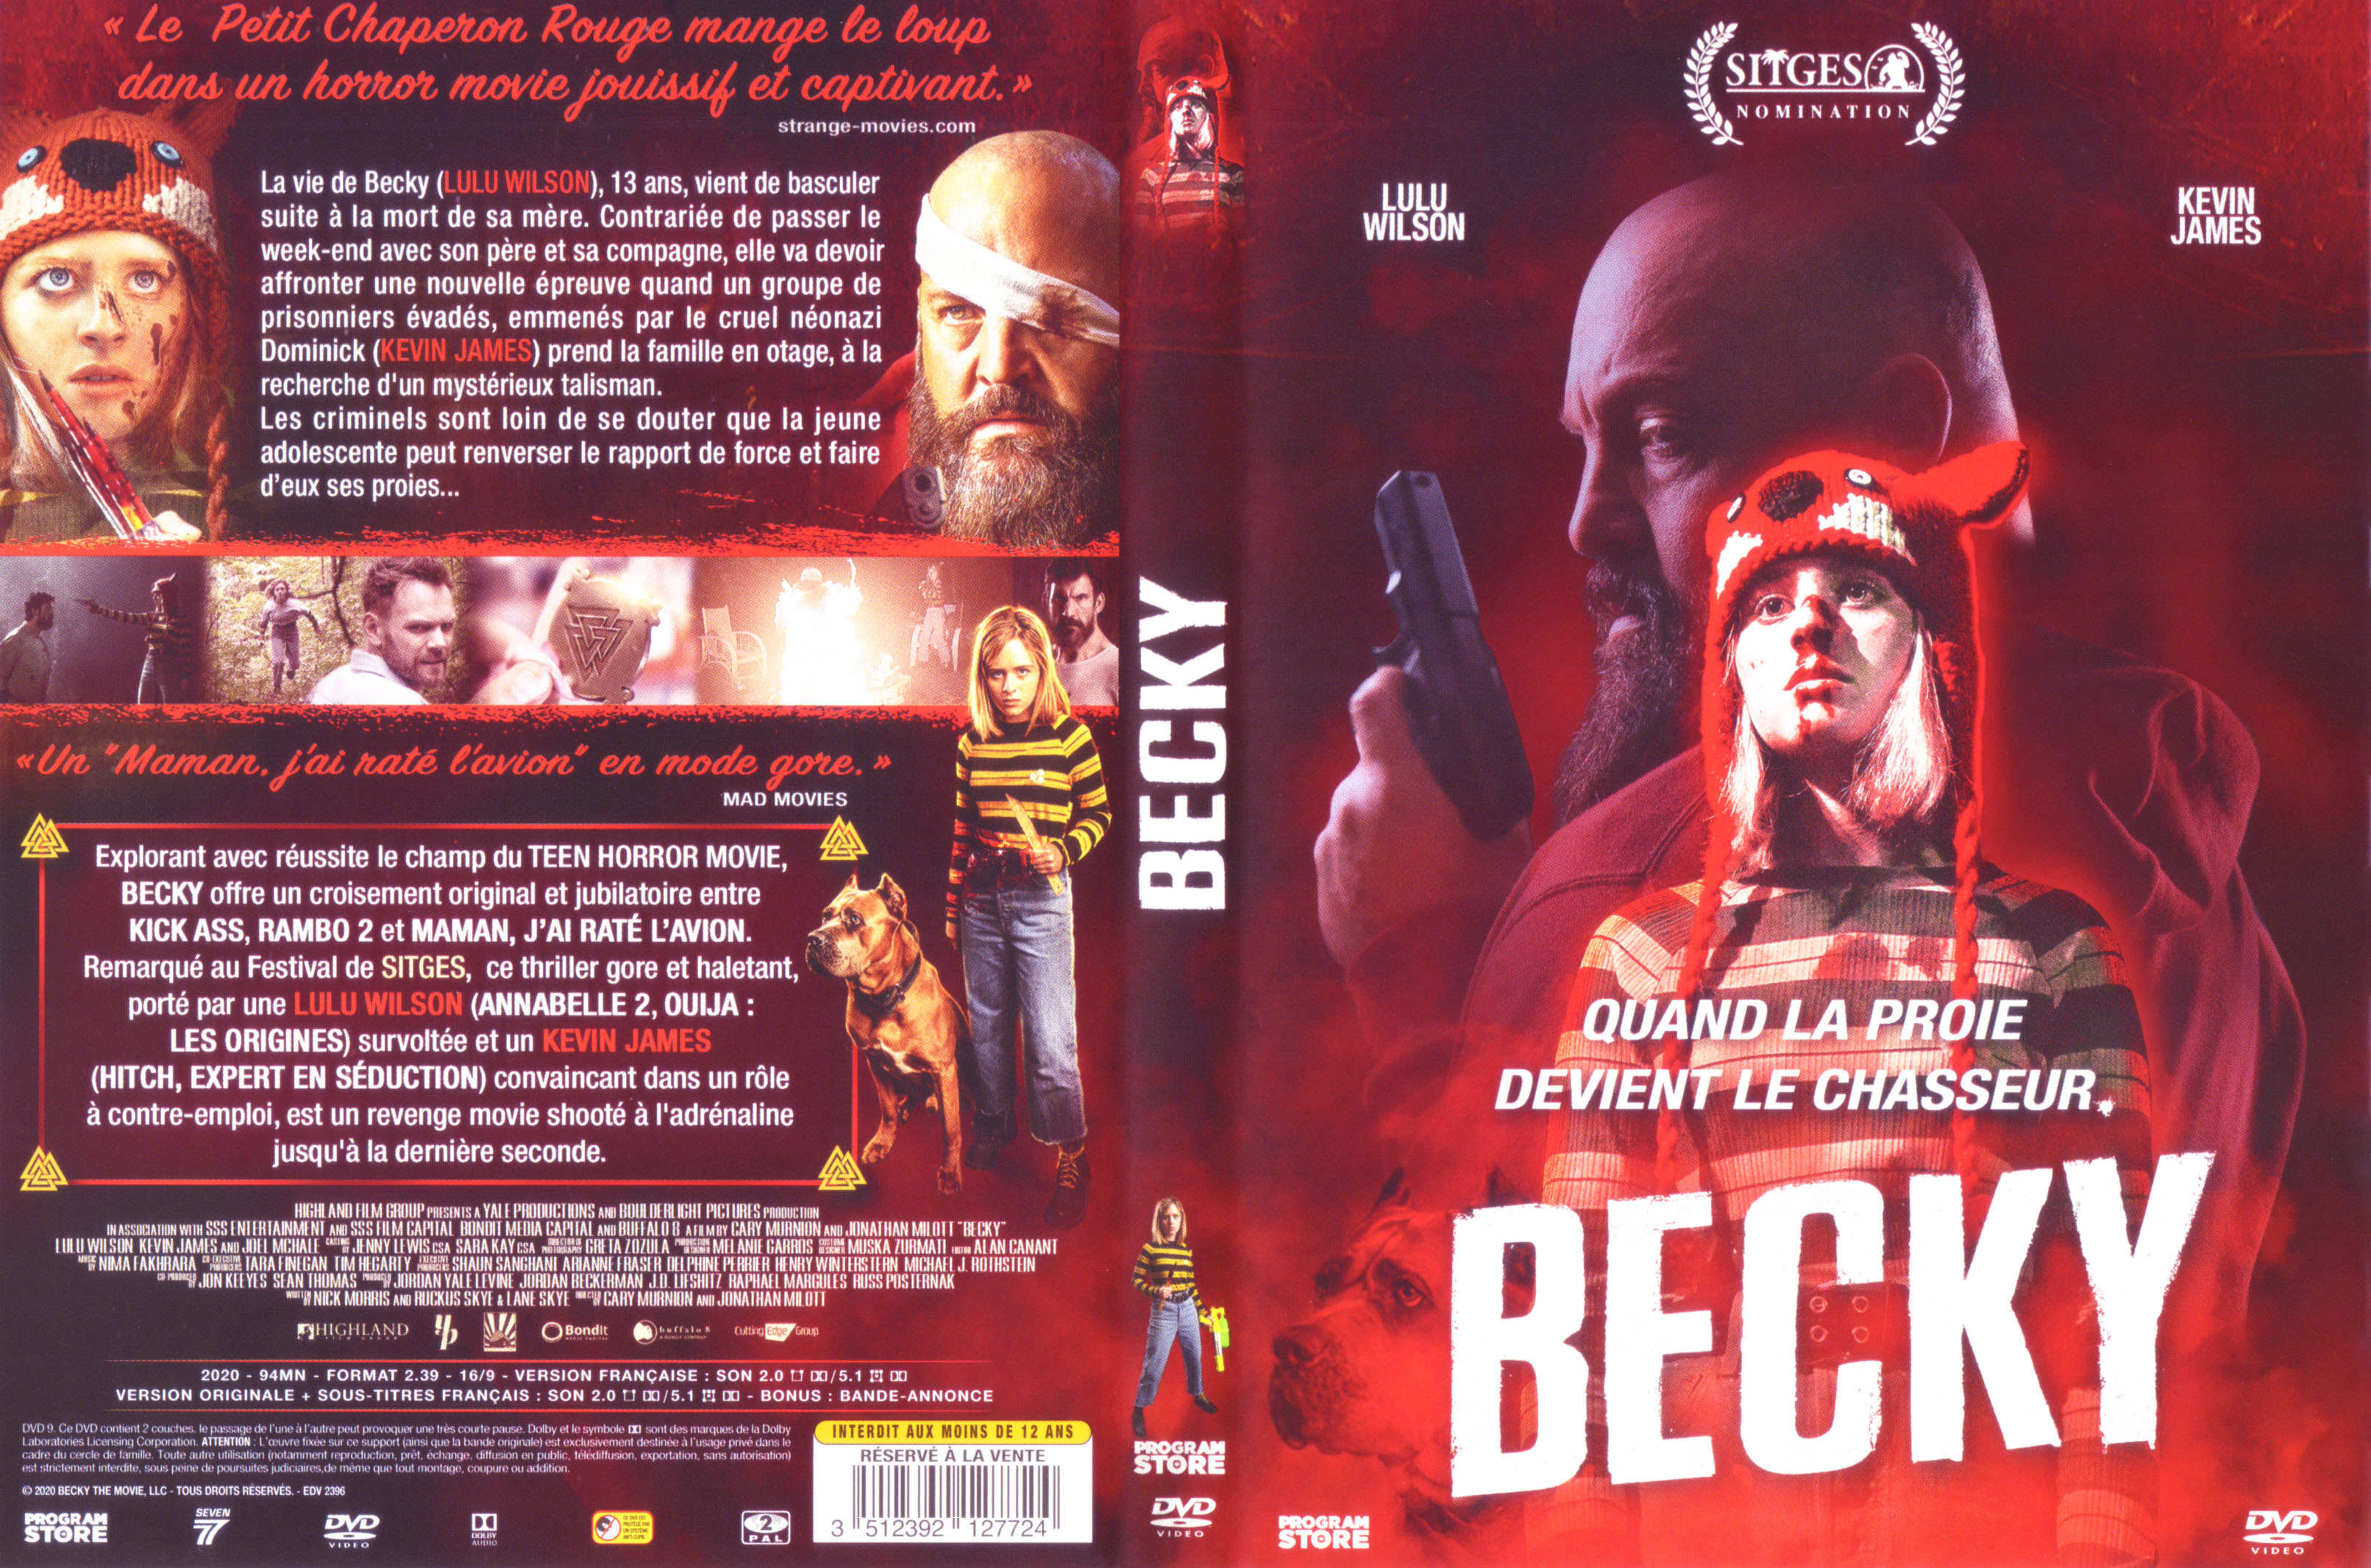 Jaquette DVD Becky